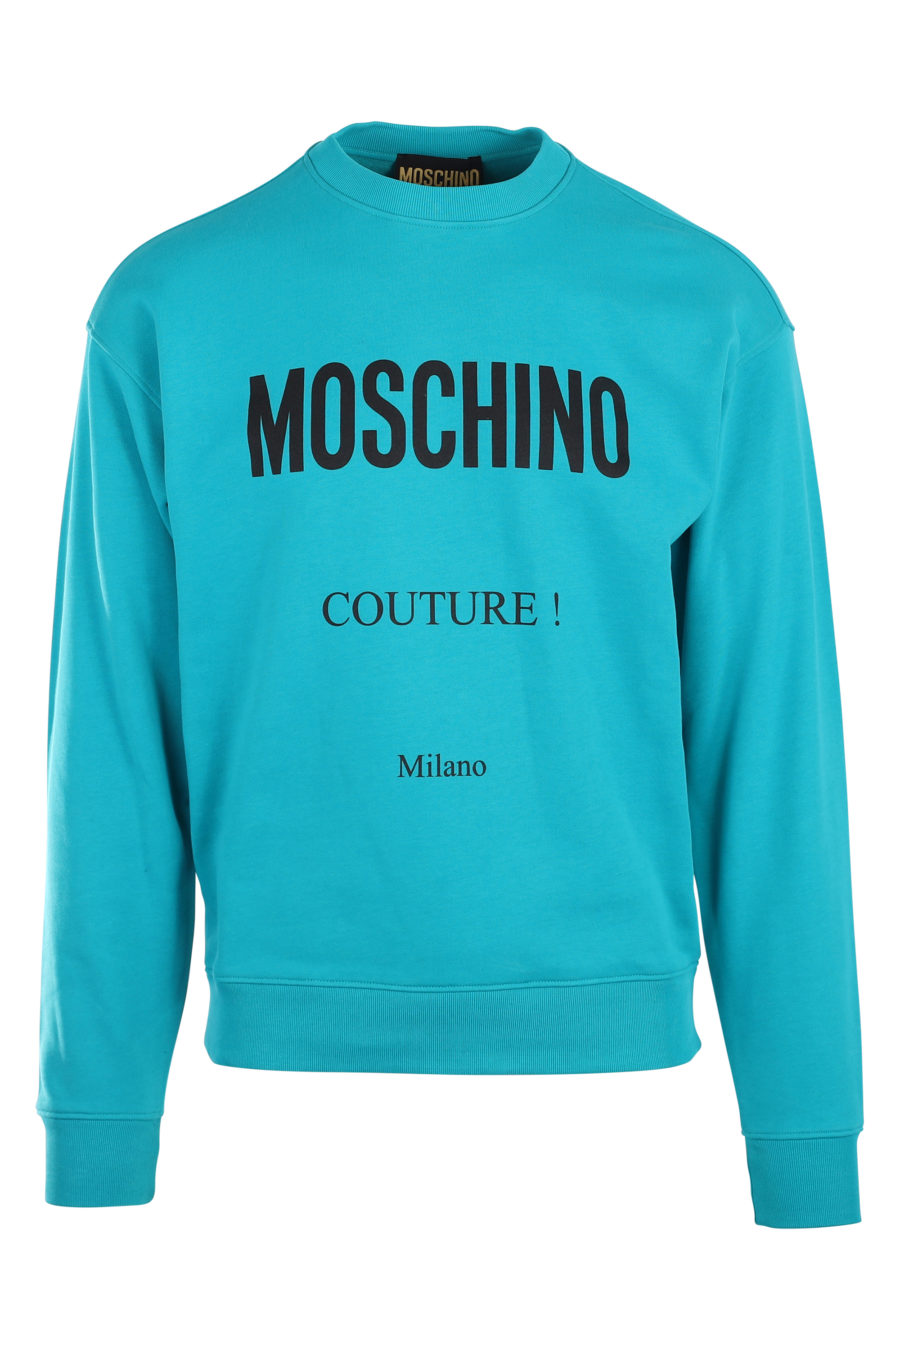 Sweat turquoise avec logo milano "fantasy" - IMG 9931